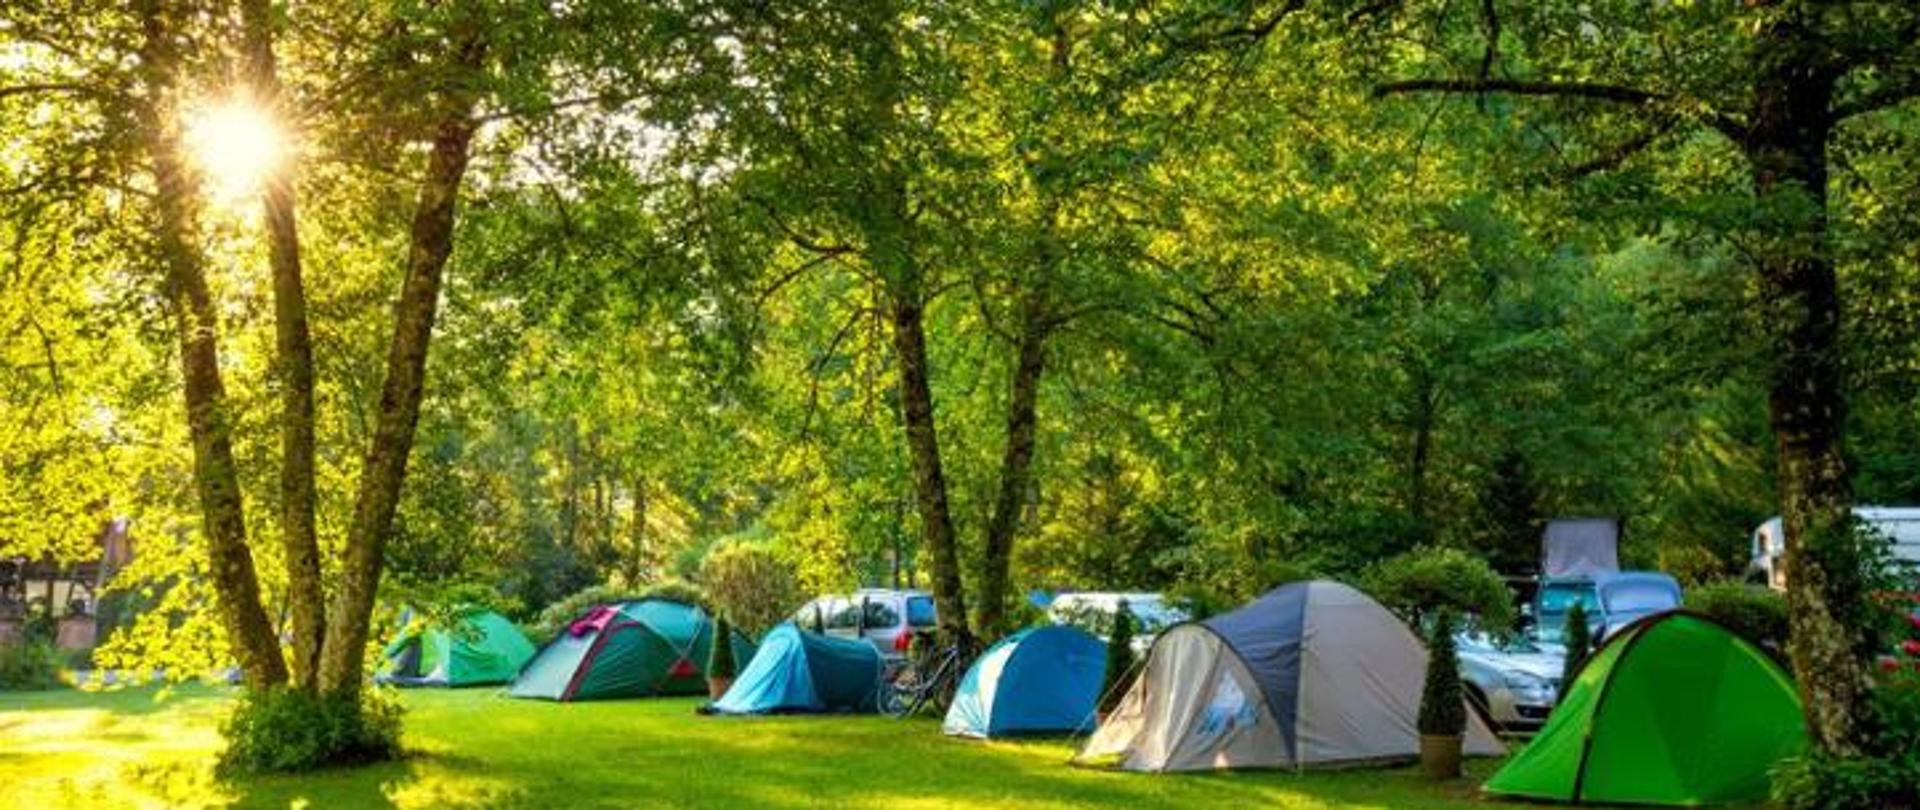 Pole namiotowe wśród drzew i zieleni z rozbitymi namiotami